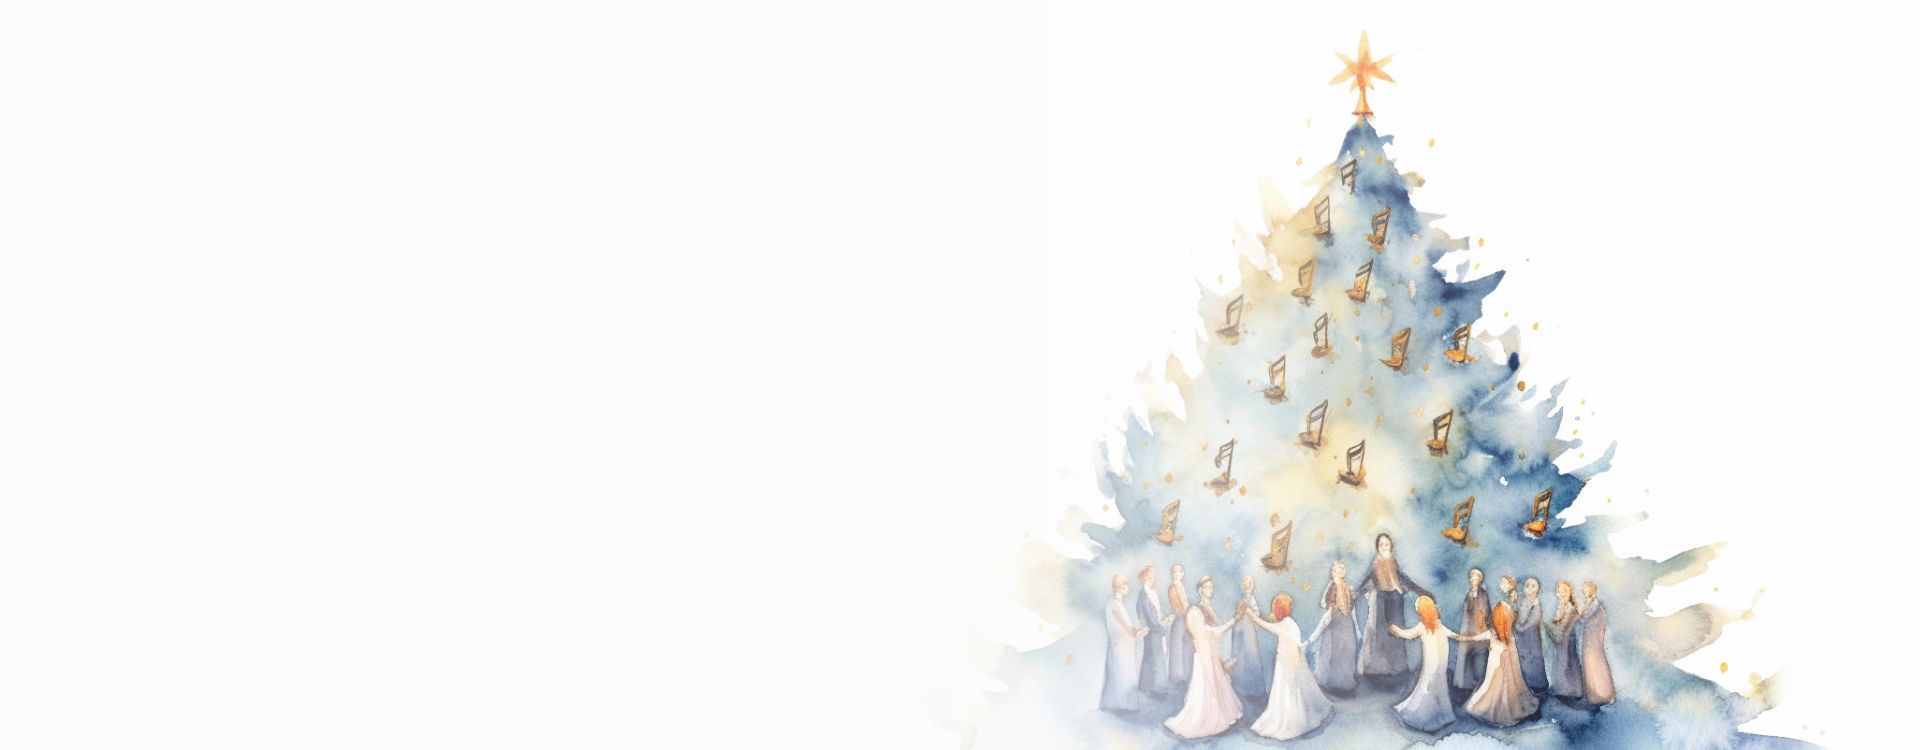 Imagen de cabecera del concierto de Navidad de la UAM. Muestra un árbol de navidad pintado con acuarela